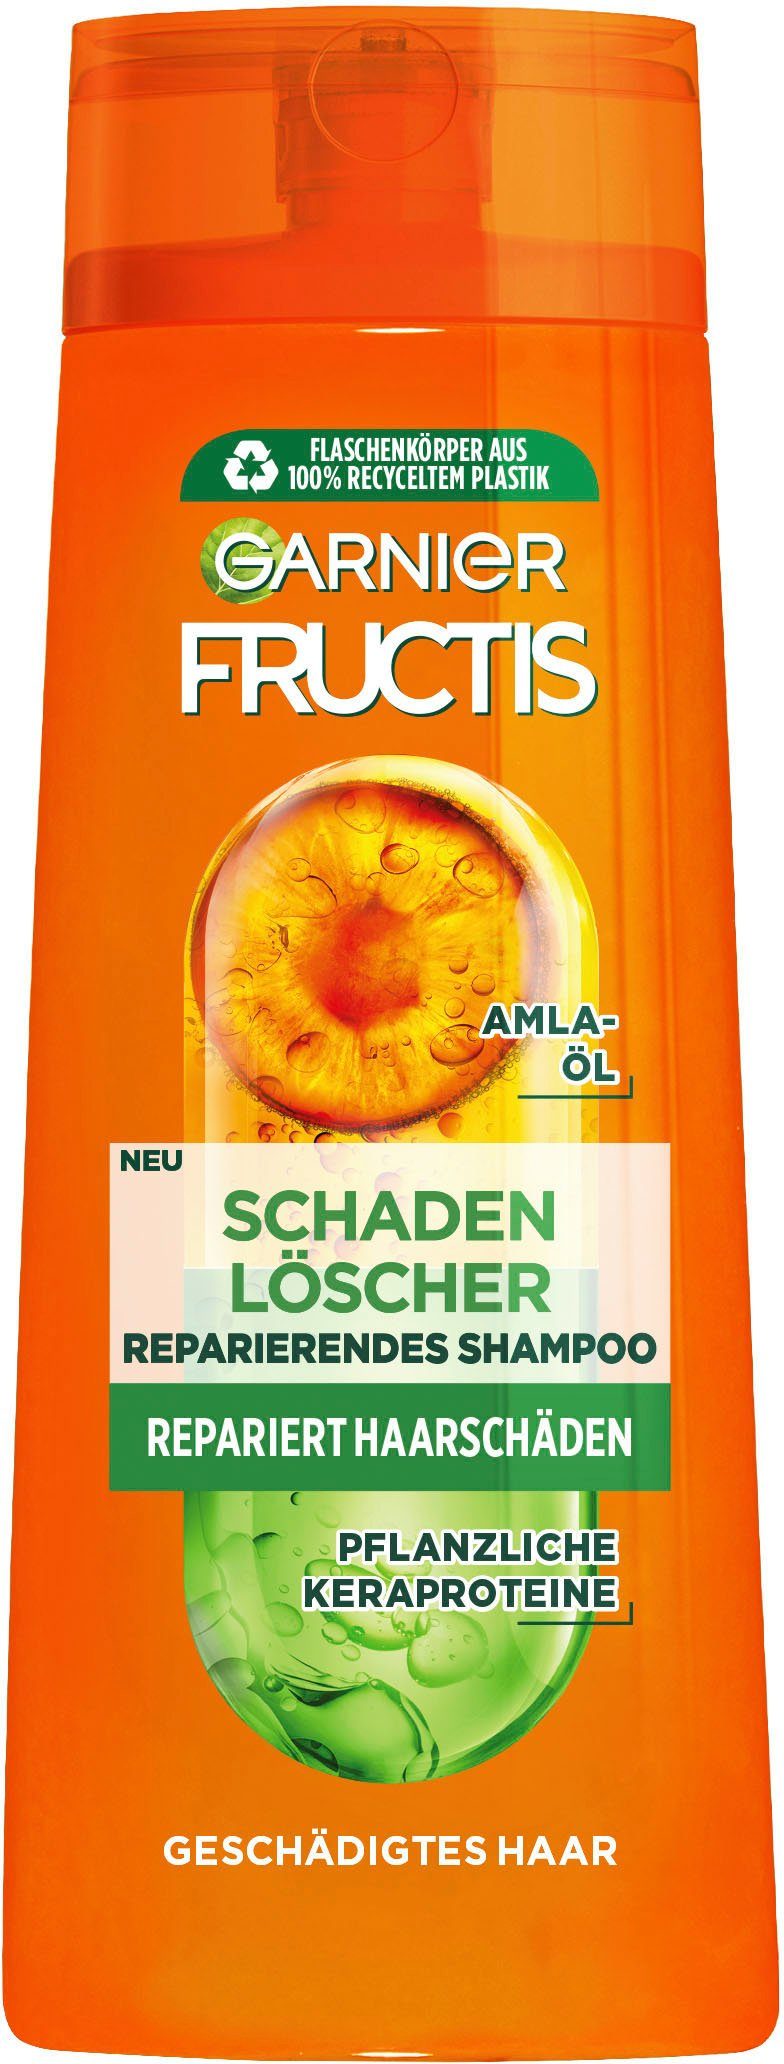 GARNIER Haarshampoo Garnier Fructis Schadenlöscher Shampoo, Set, 6-tlg